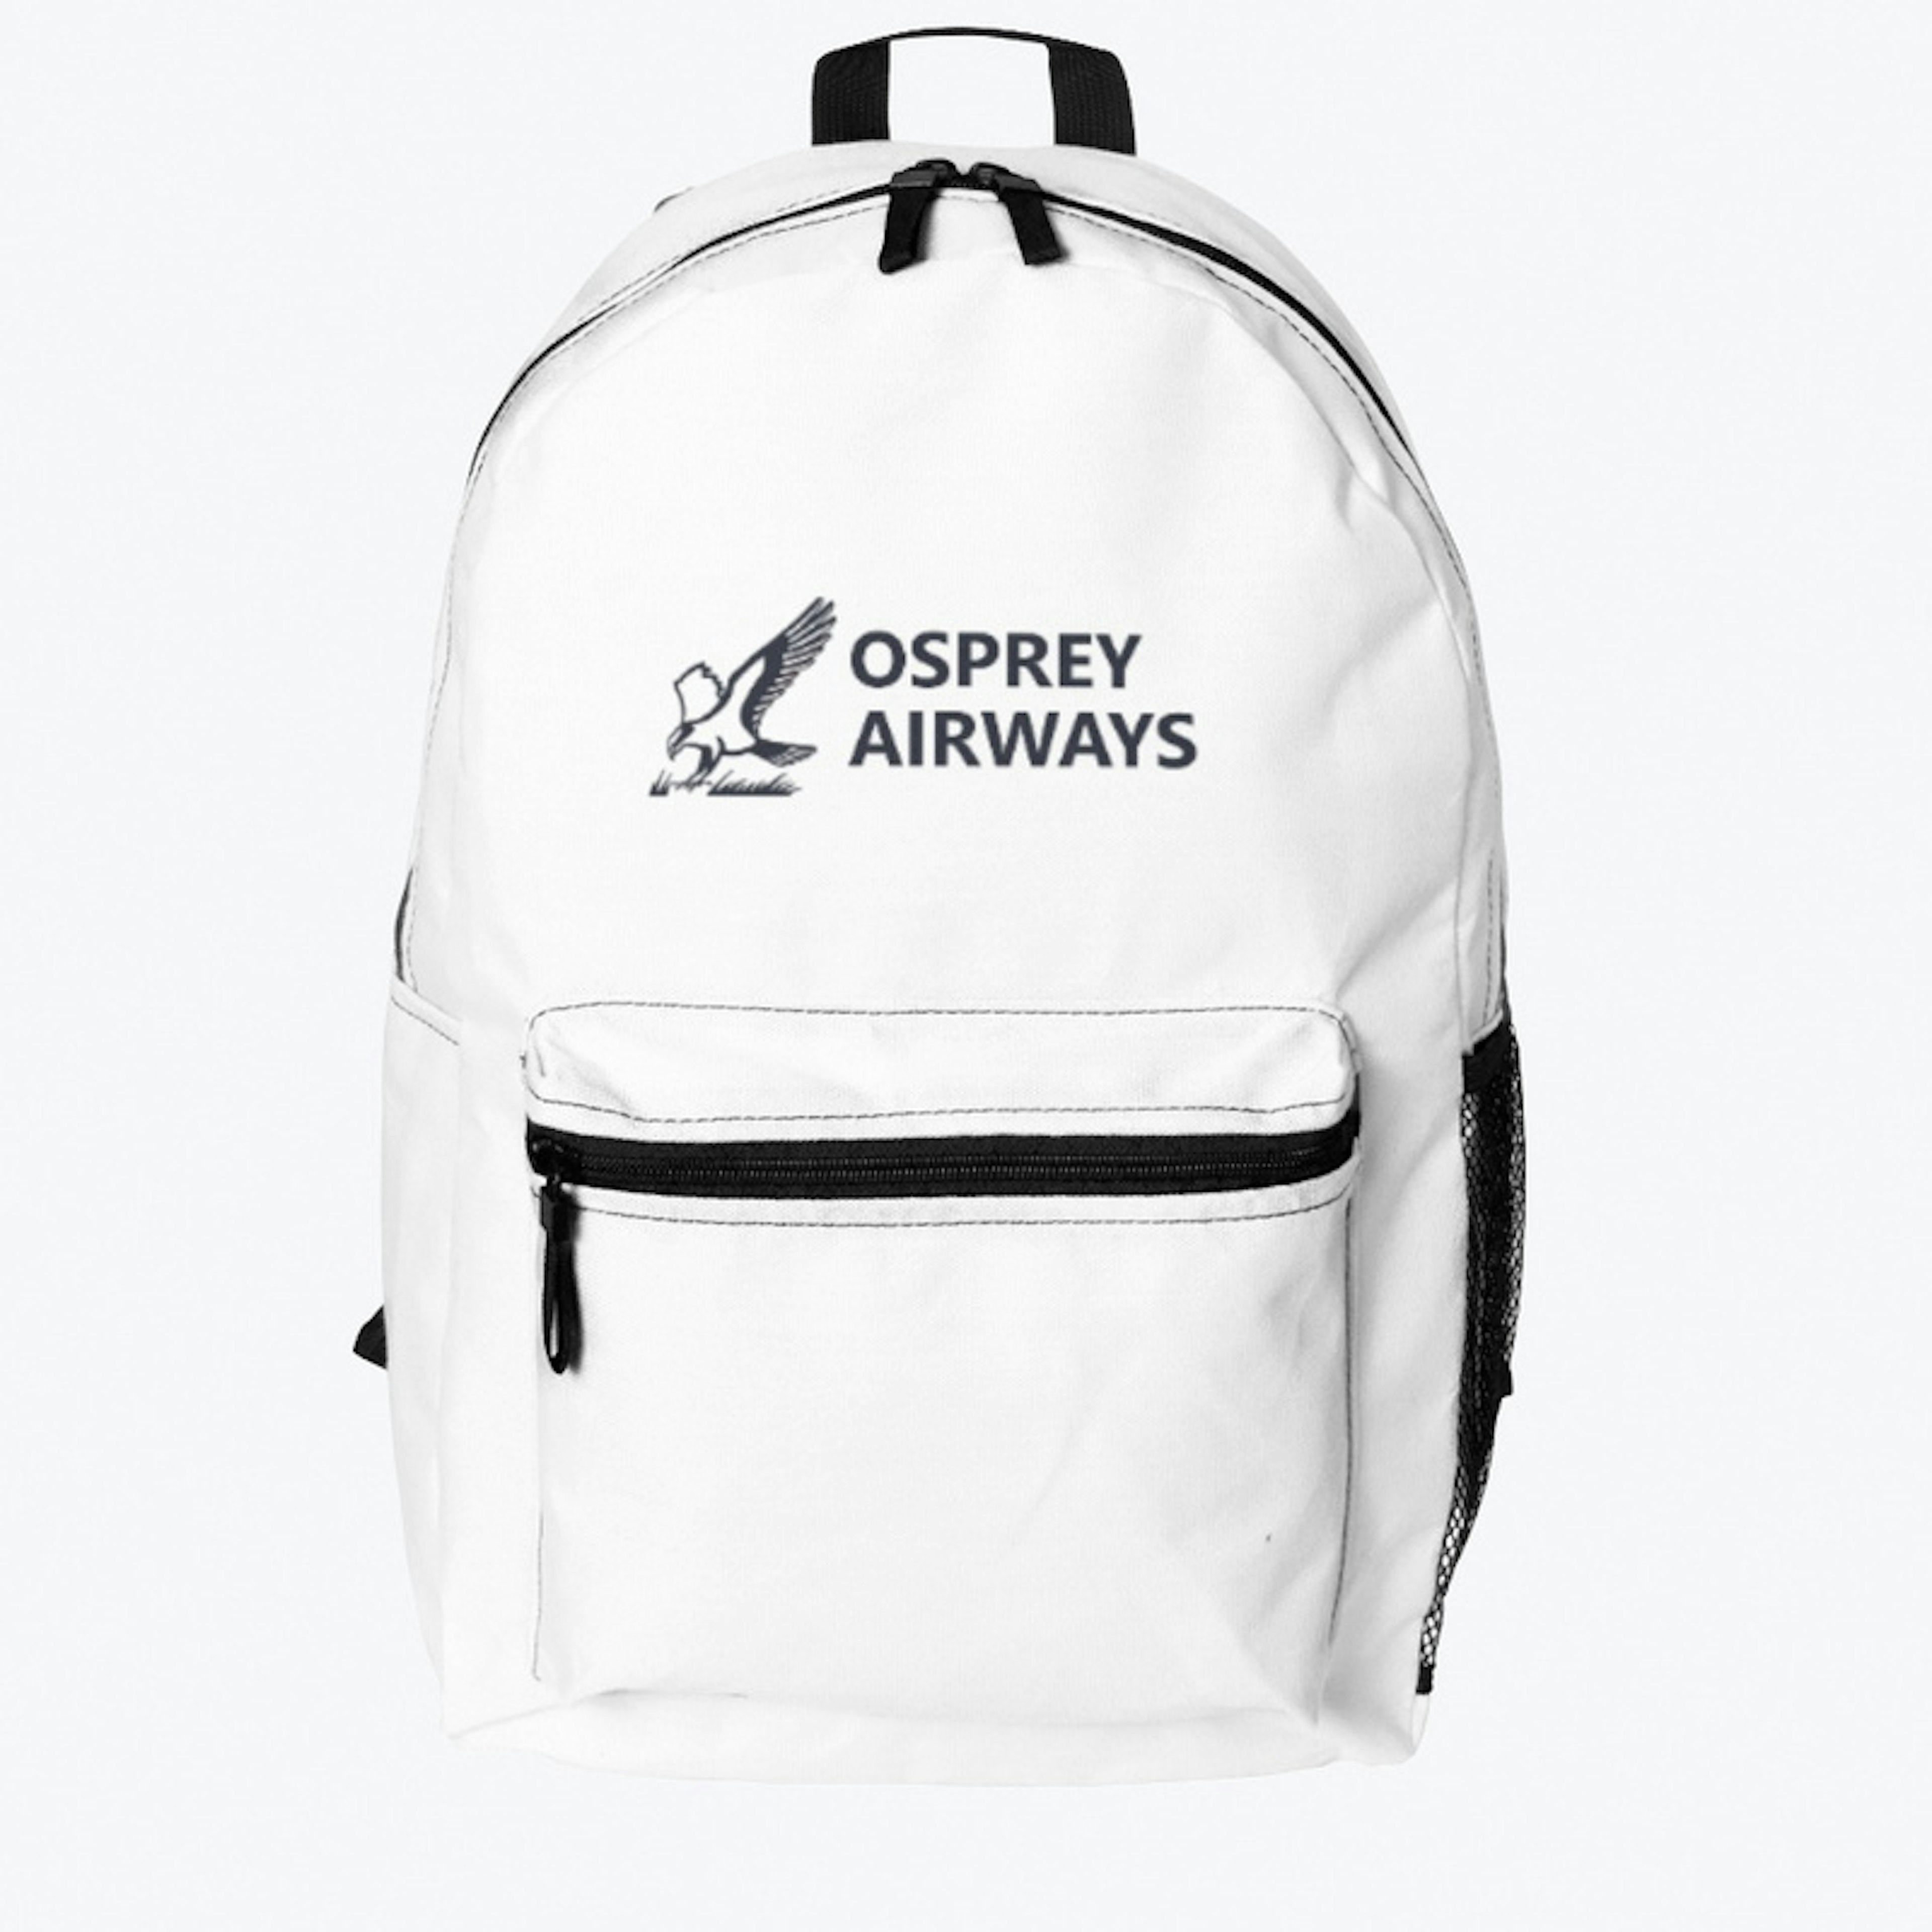 Osprey Airways